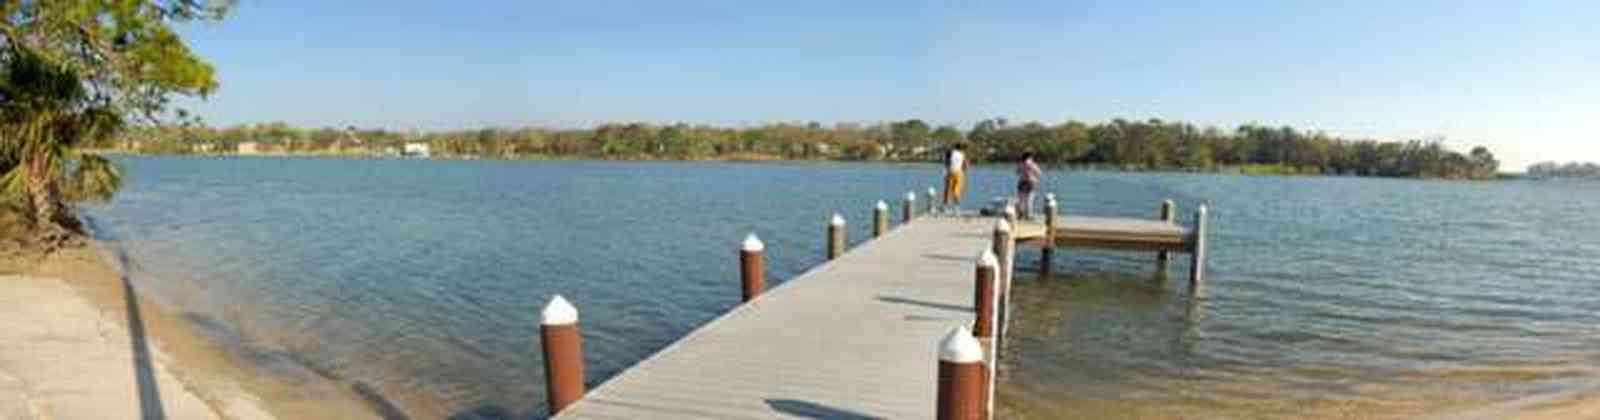 Pensacola:-Bayou-Texar_02.jpg:  bayou, texar, lake, bay, water, calm water, mansions, 